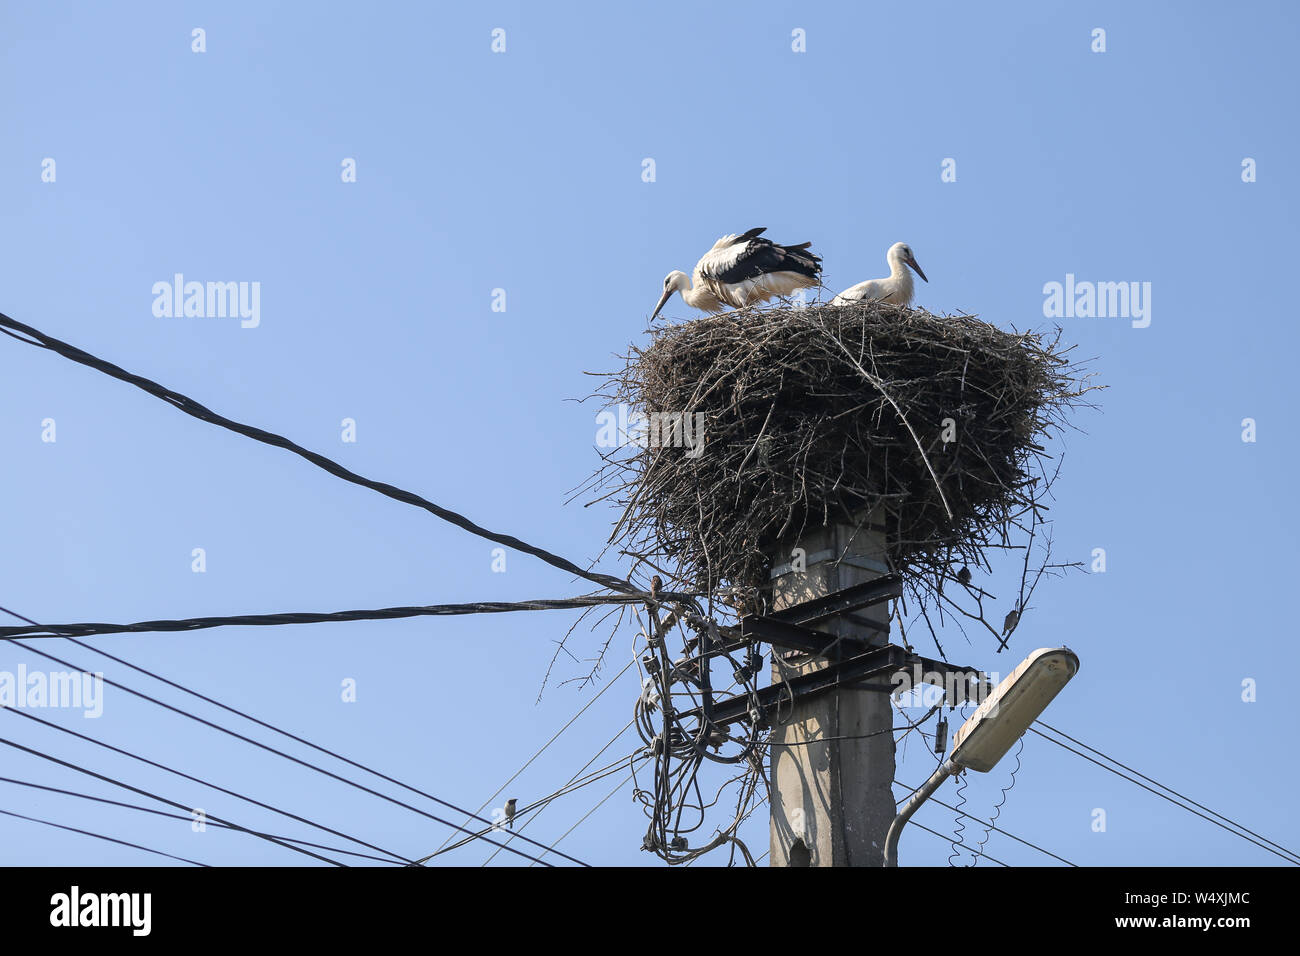 Familie der Störche leben auf einem Nest sie auf einem Strommast in einem ländlichen Gebiet von Rumänien gemacht. Wilde Tiere zwischen Menschen. Stockfoto